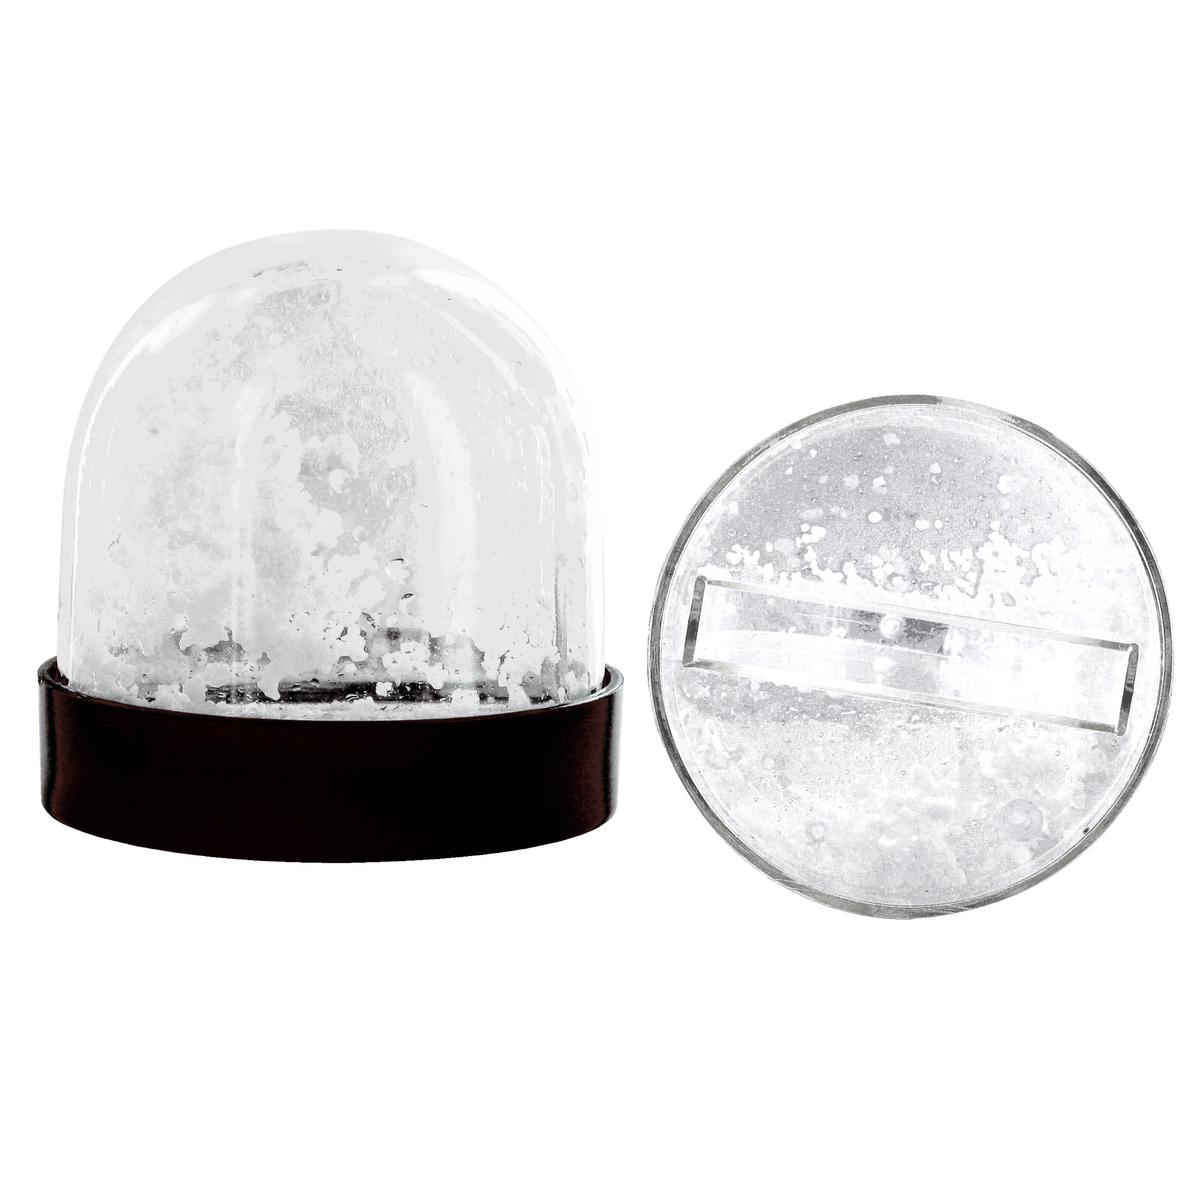 Globe acrylique boule à neige avec inclusion photos 8,7 x 8,5 cm